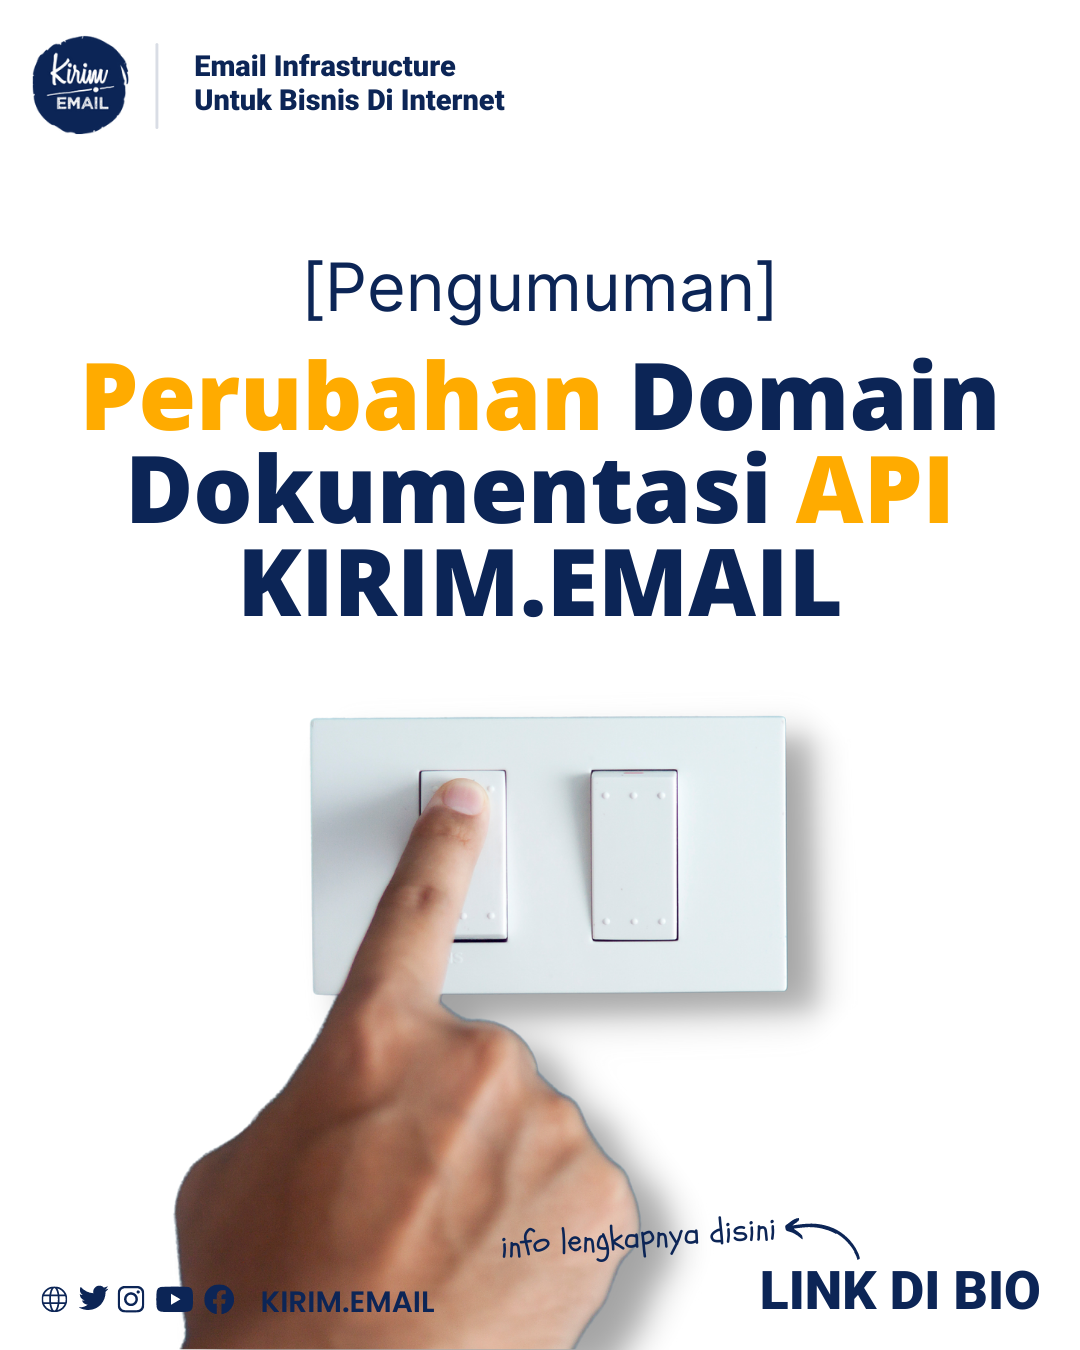 [Pengumuman] Perubahan Domain API KIRIM.EMAIL